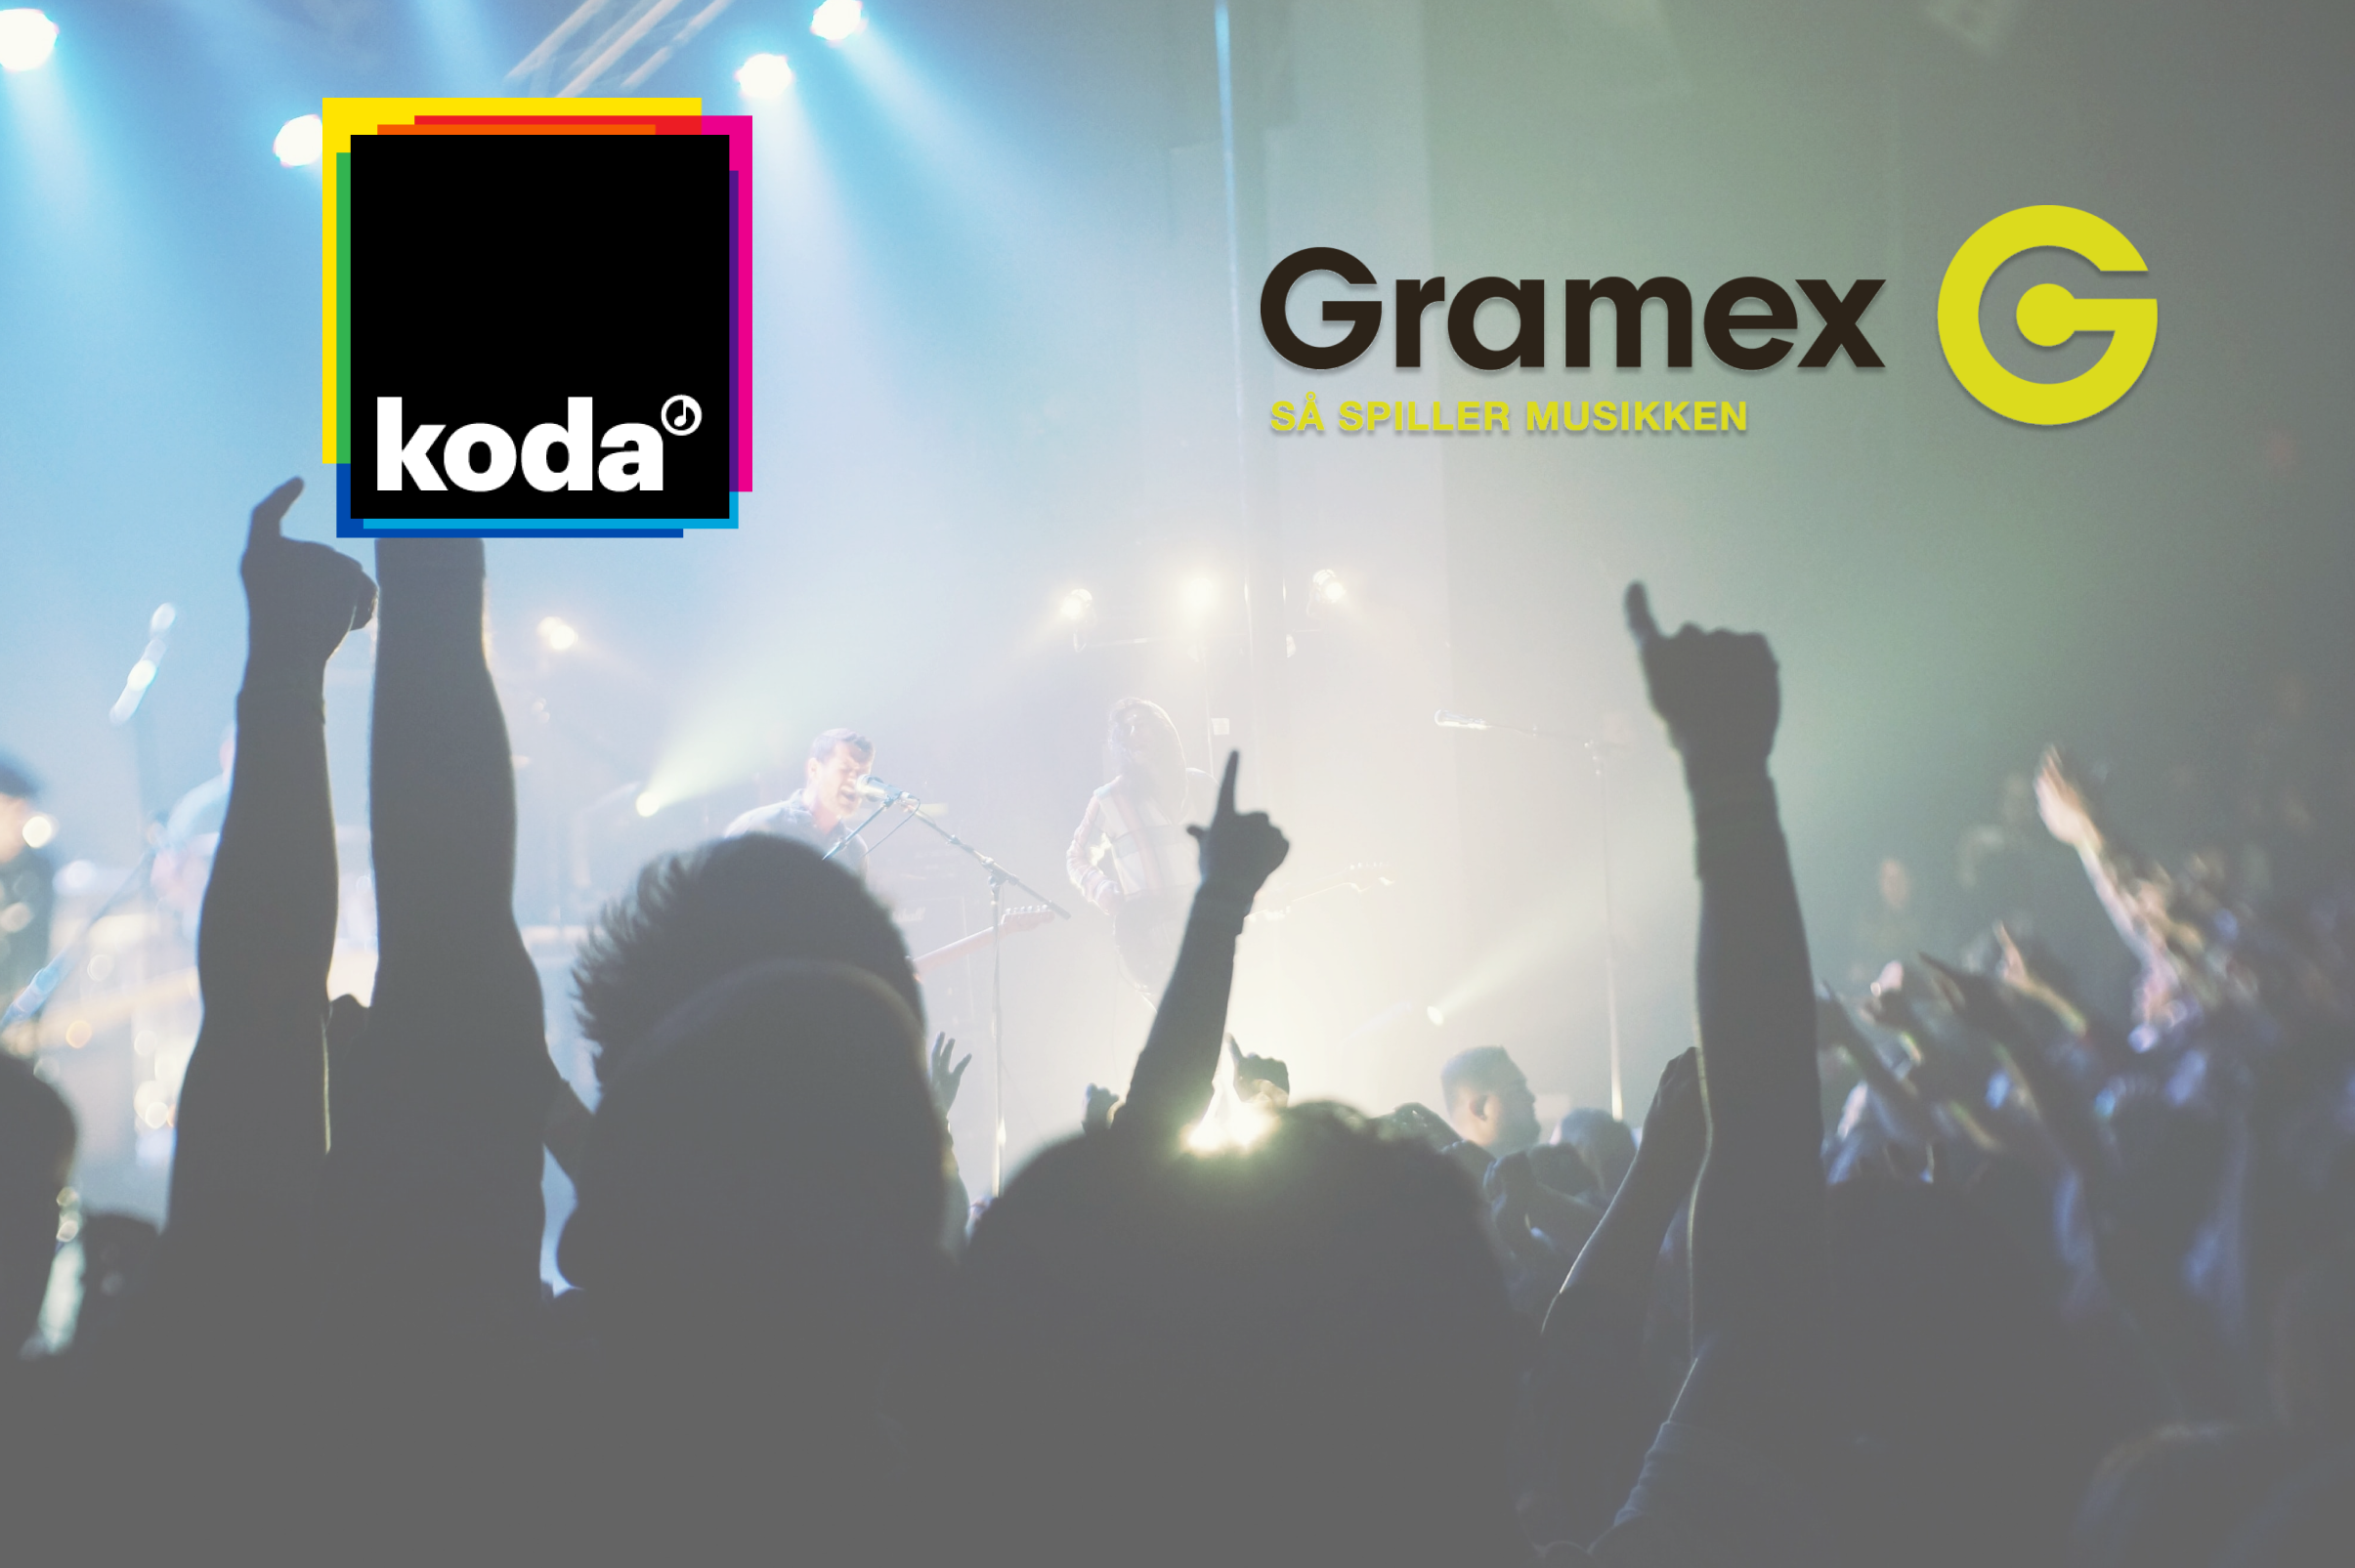 Hvad er forskellen på Koda og Gramex?